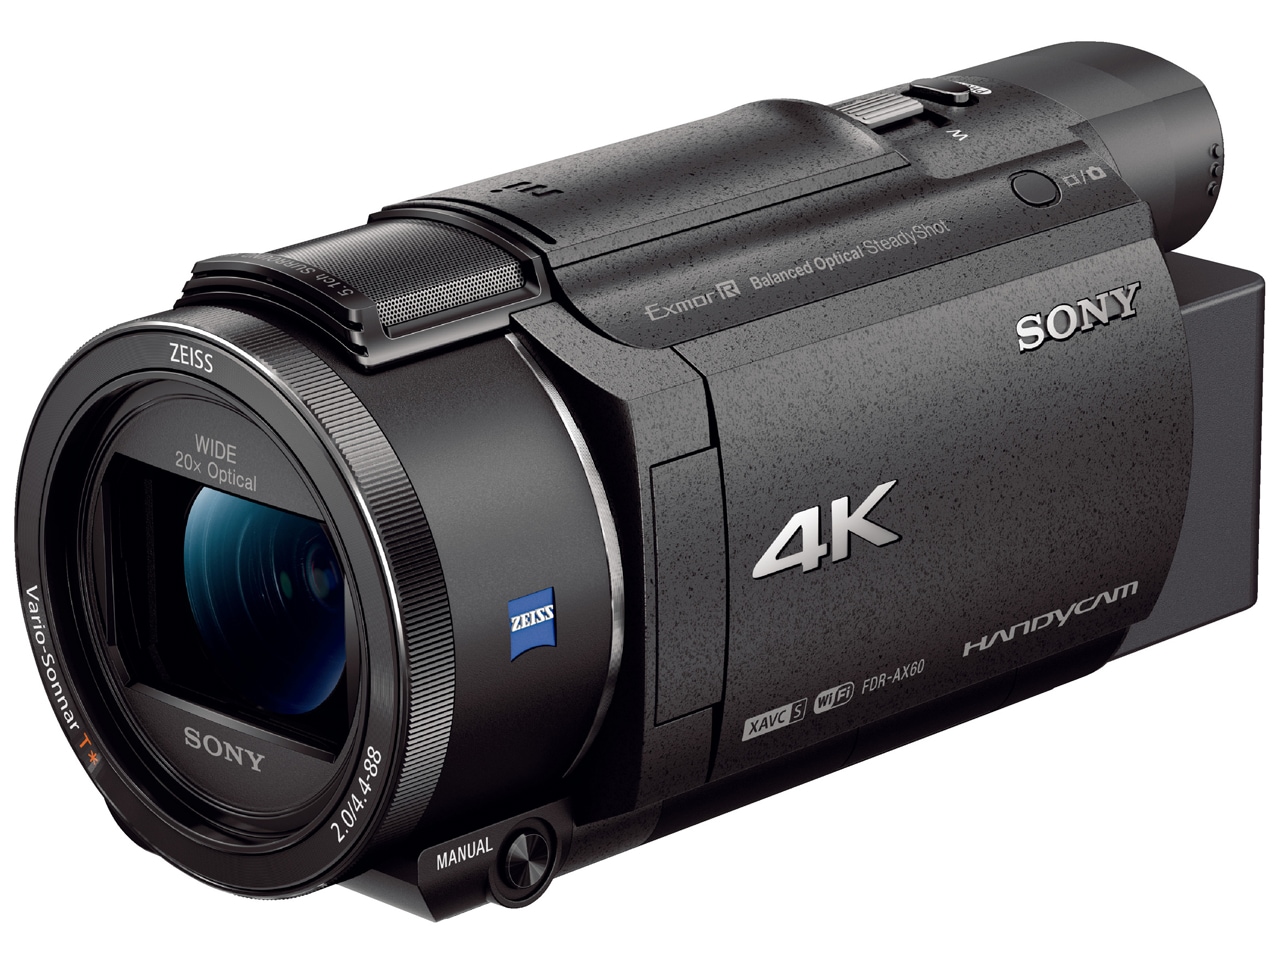 ソニー   4K   ビデオカメラ   Handycam   FDR-AX45(2018年モデル)   ブラック   内蔵メモリー64GB   光学ズ - 3